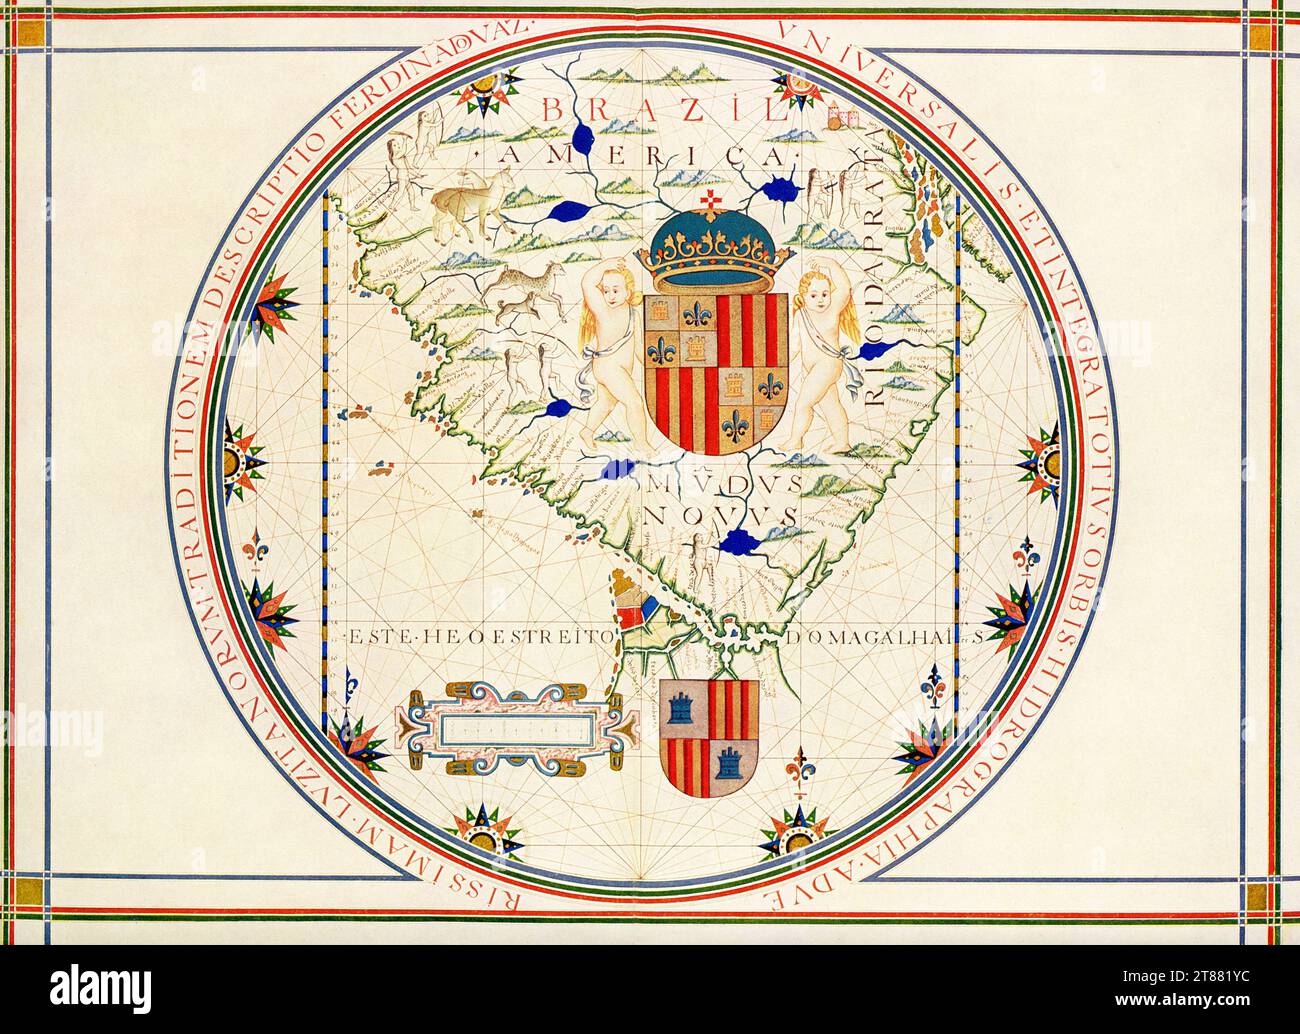 Mappa della punta meridionale dell'America. Dopo una mappa a Lisbona risalente al 1571 realizzata dal geografo portoghese Fernao Vaz Dourado. Questa mappa è attribuita al cartografo portoghese, navigatore e illuminatore Fernão Vaz Dourado (circa 1520-80), sulla base di somiglianze tra altre mappe di Vaz e illustrazioni in questo manoscritto. Vaz produsse sette atlanti marini brillantemente illuminati tra il 1568 e il 1580. Questa mappa, dal suo atlante risalente al 1576 circa, mostra la punta meridionale del Sud America. L'atlante divenne parte delle collezioni della Biblioteca Nazionale del Portogallo dopo il 1910. Foto Stock